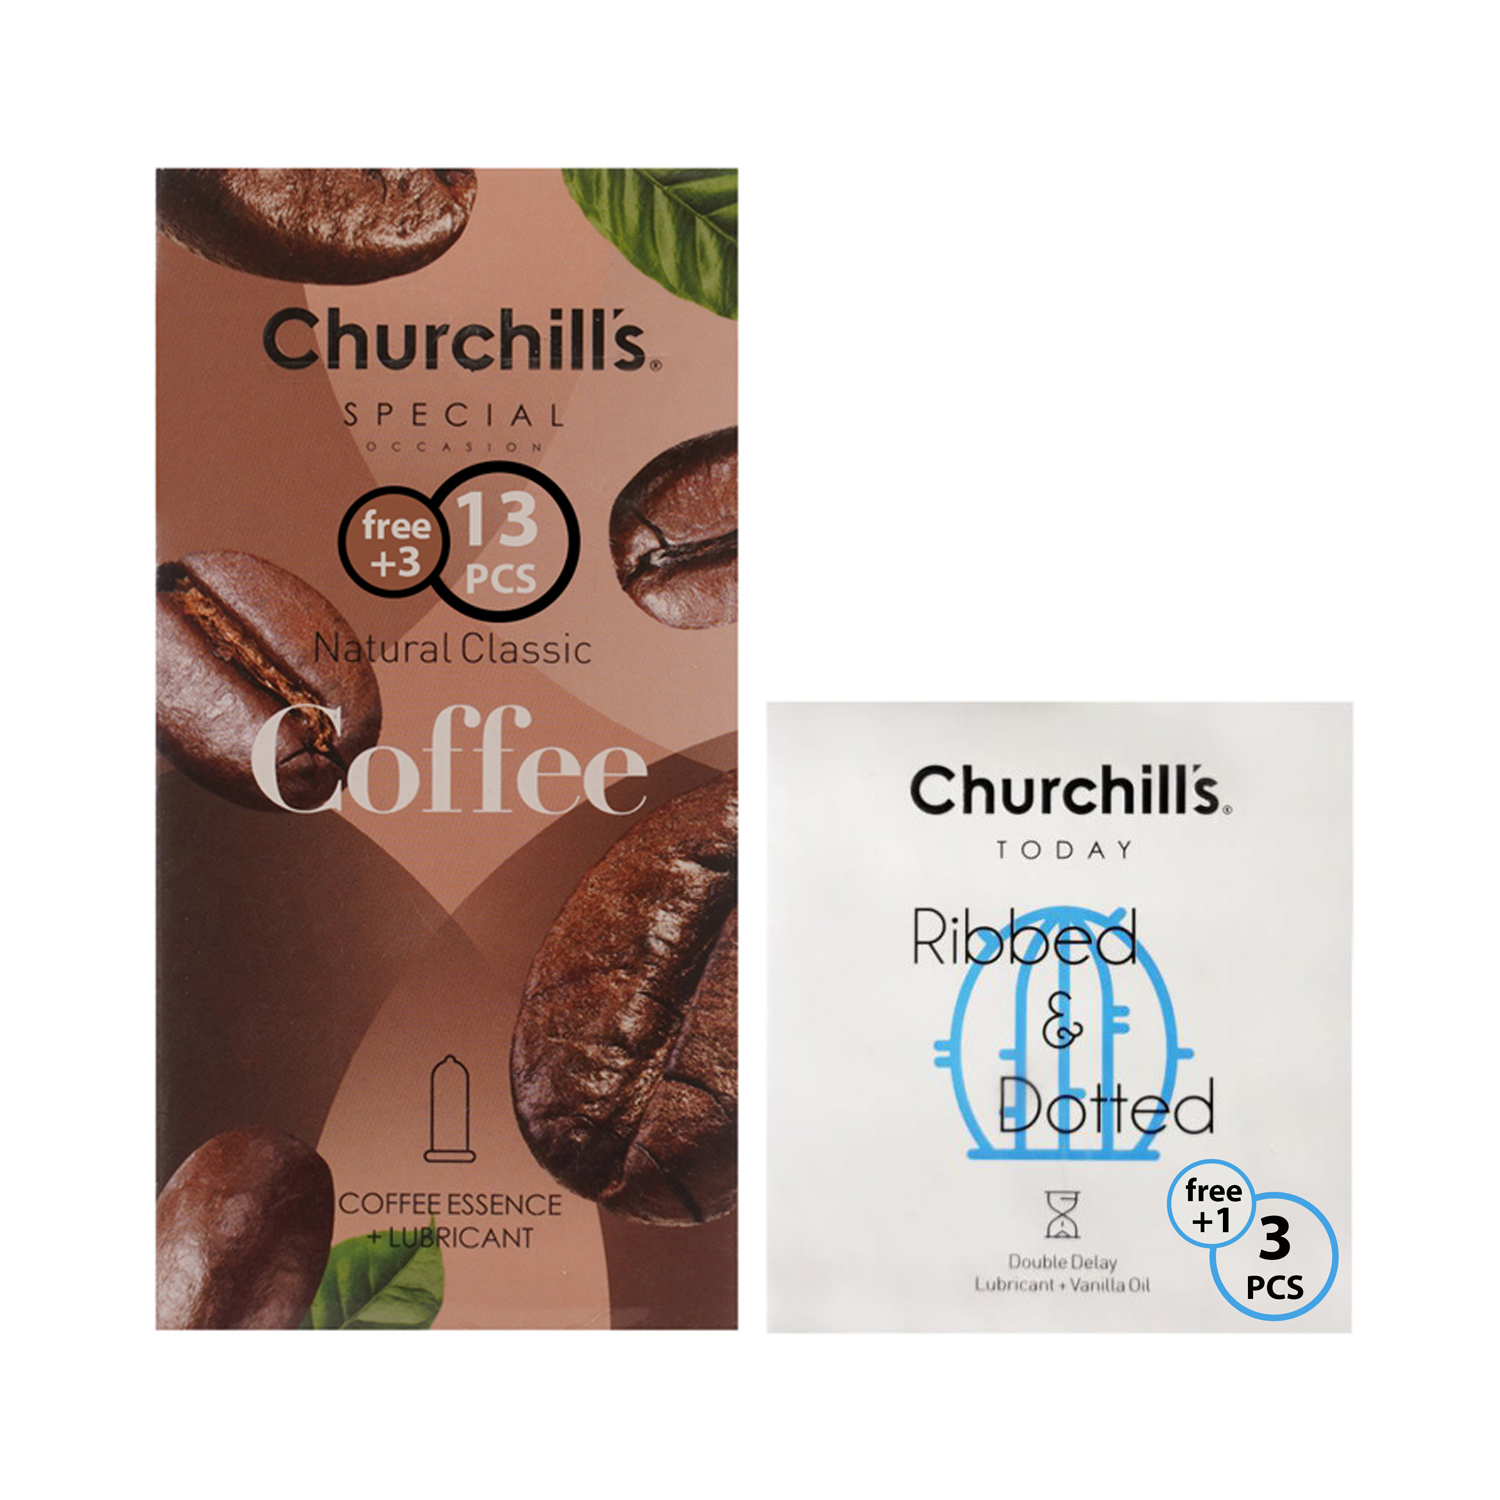 کاندوم چرچیلز مدل coffee بسته 16 عددی به همراه کاندوم چرچیلز مدل ribbeed بسته 4 عددی